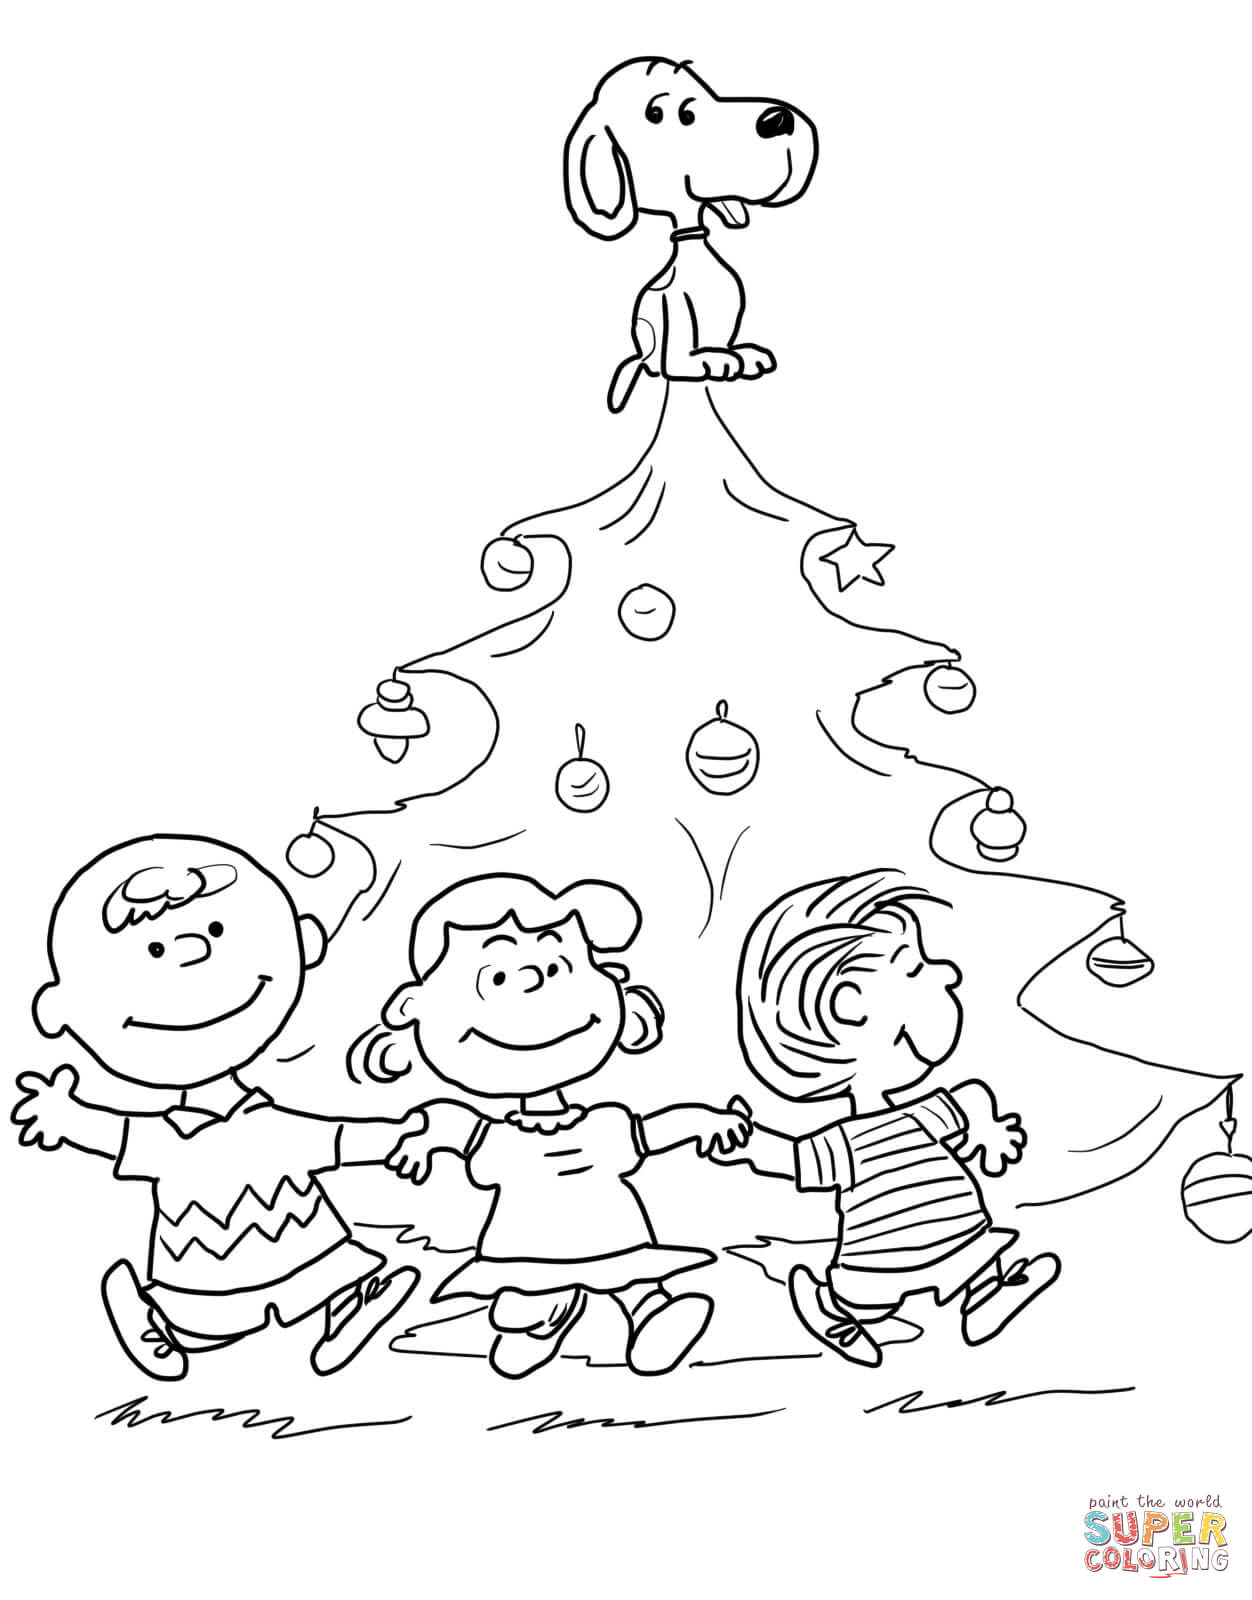 Charlie Brown Christmas Tree coloring page | Free Printable